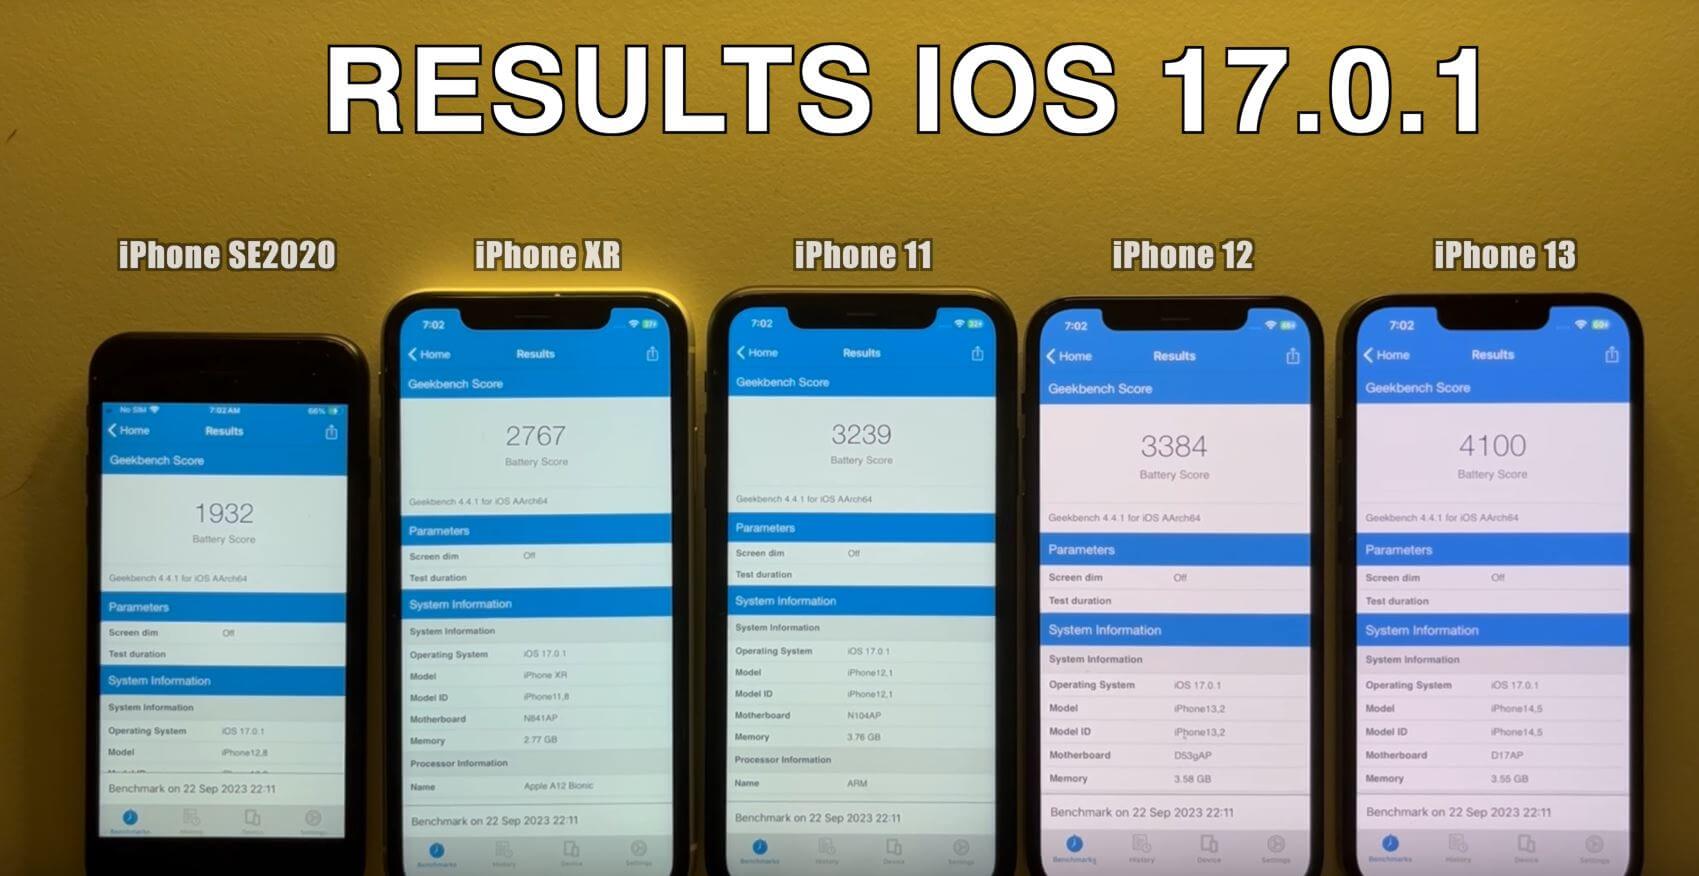 Обновляться ли до ios 17.4. IOS 17.4 какие устройства получат. 17.3.1 IOS стоит ли обновлять. Будут ли дальнейшие обновления айфона после 17 IOS. IOS 17.3 стоит ли обновляться в России.